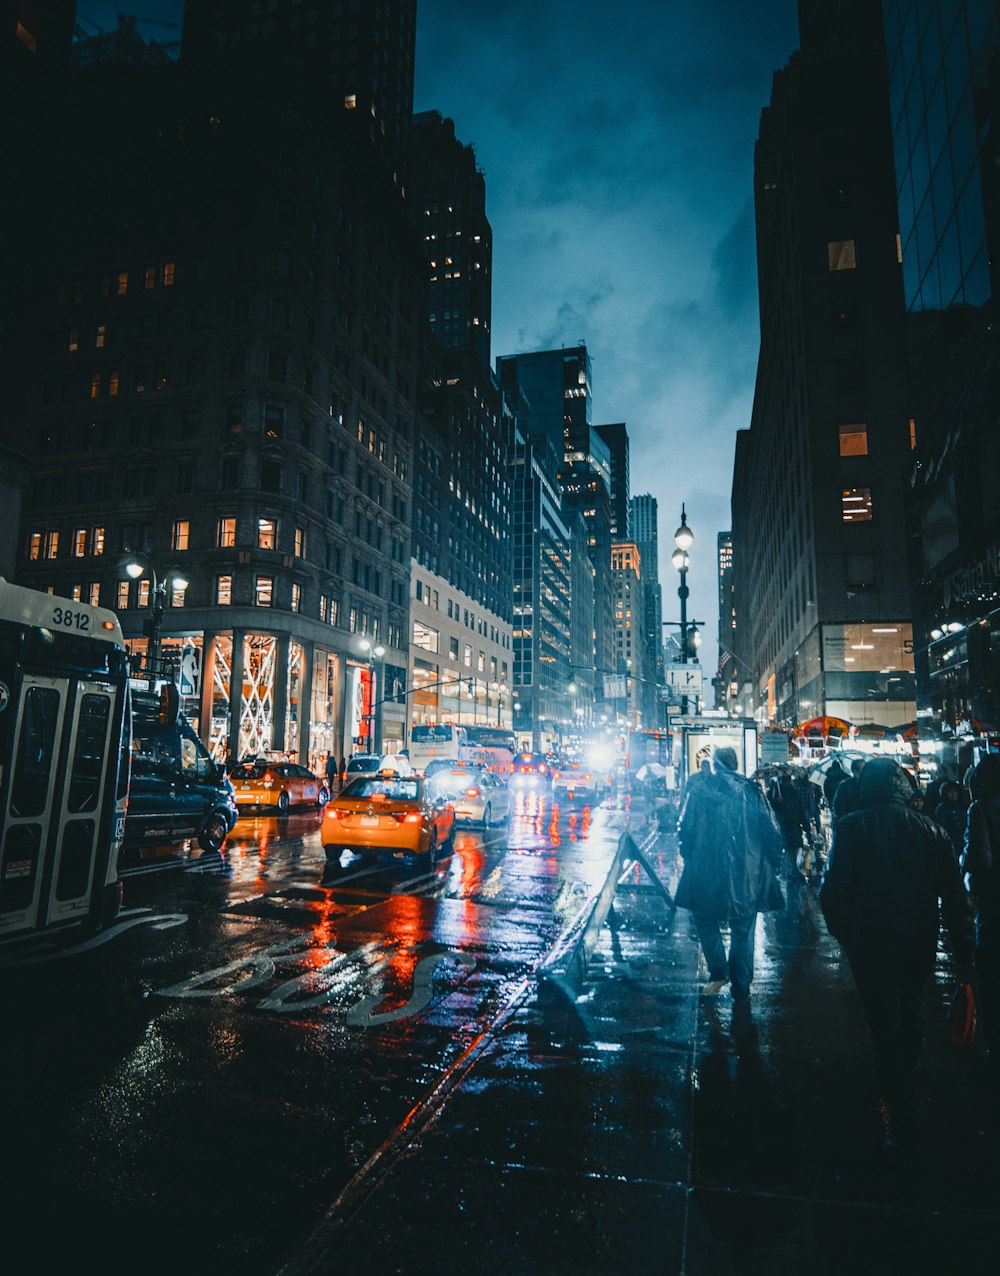 people walking on street at nighttime